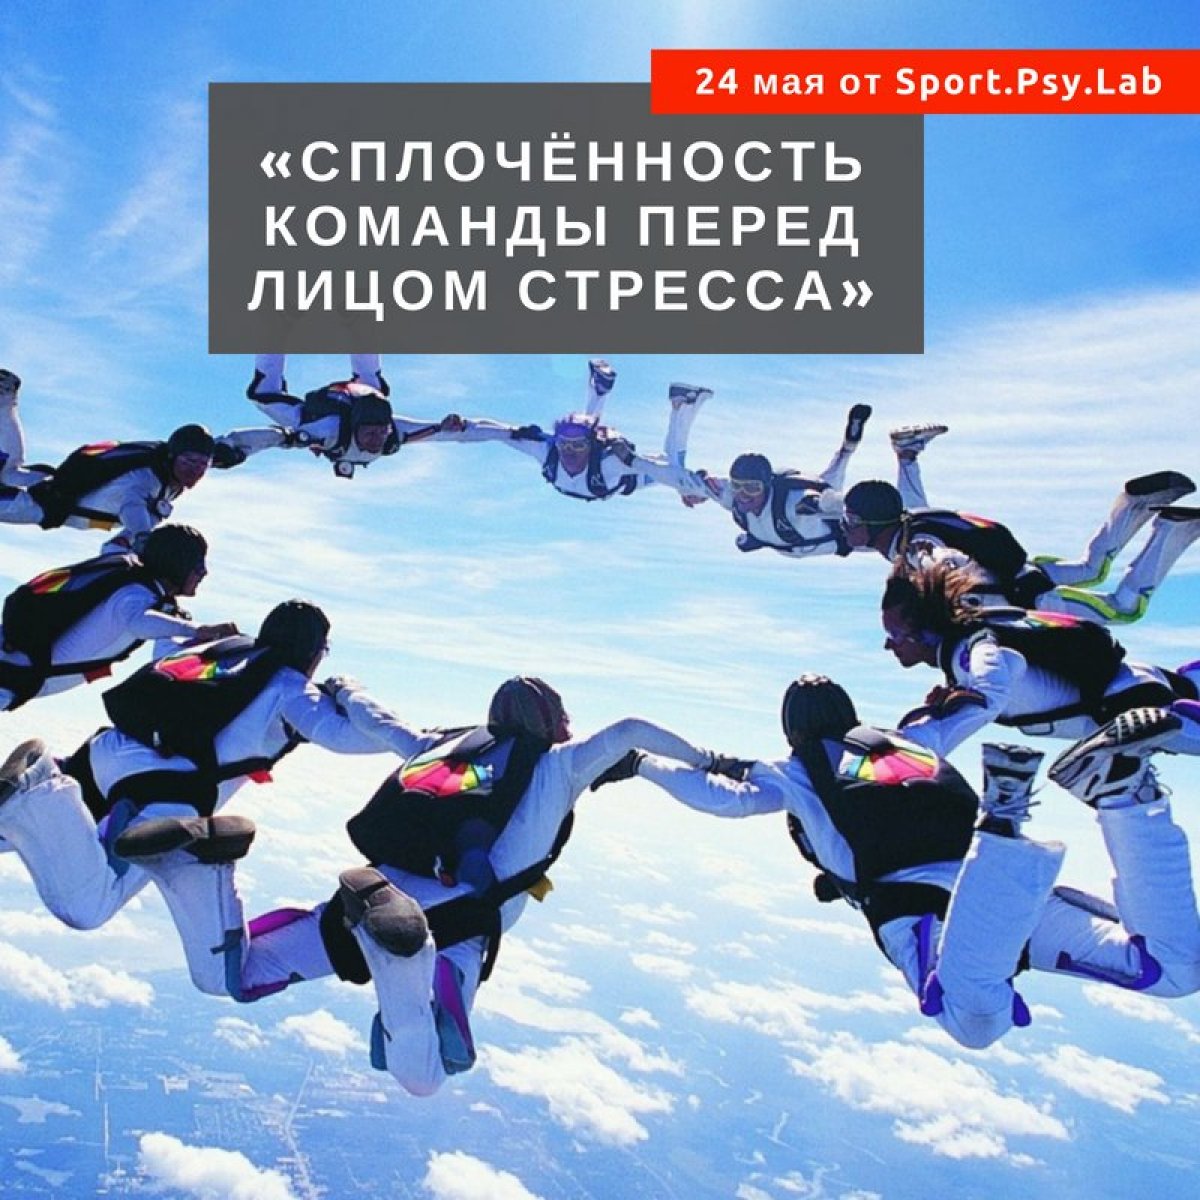 ✅ 24 мая в 19.00 приглашаем вас посетить научно-практический семинар лаборатории Sport.Psy.Lab «Сплочённость команды перед лицом стресса»!